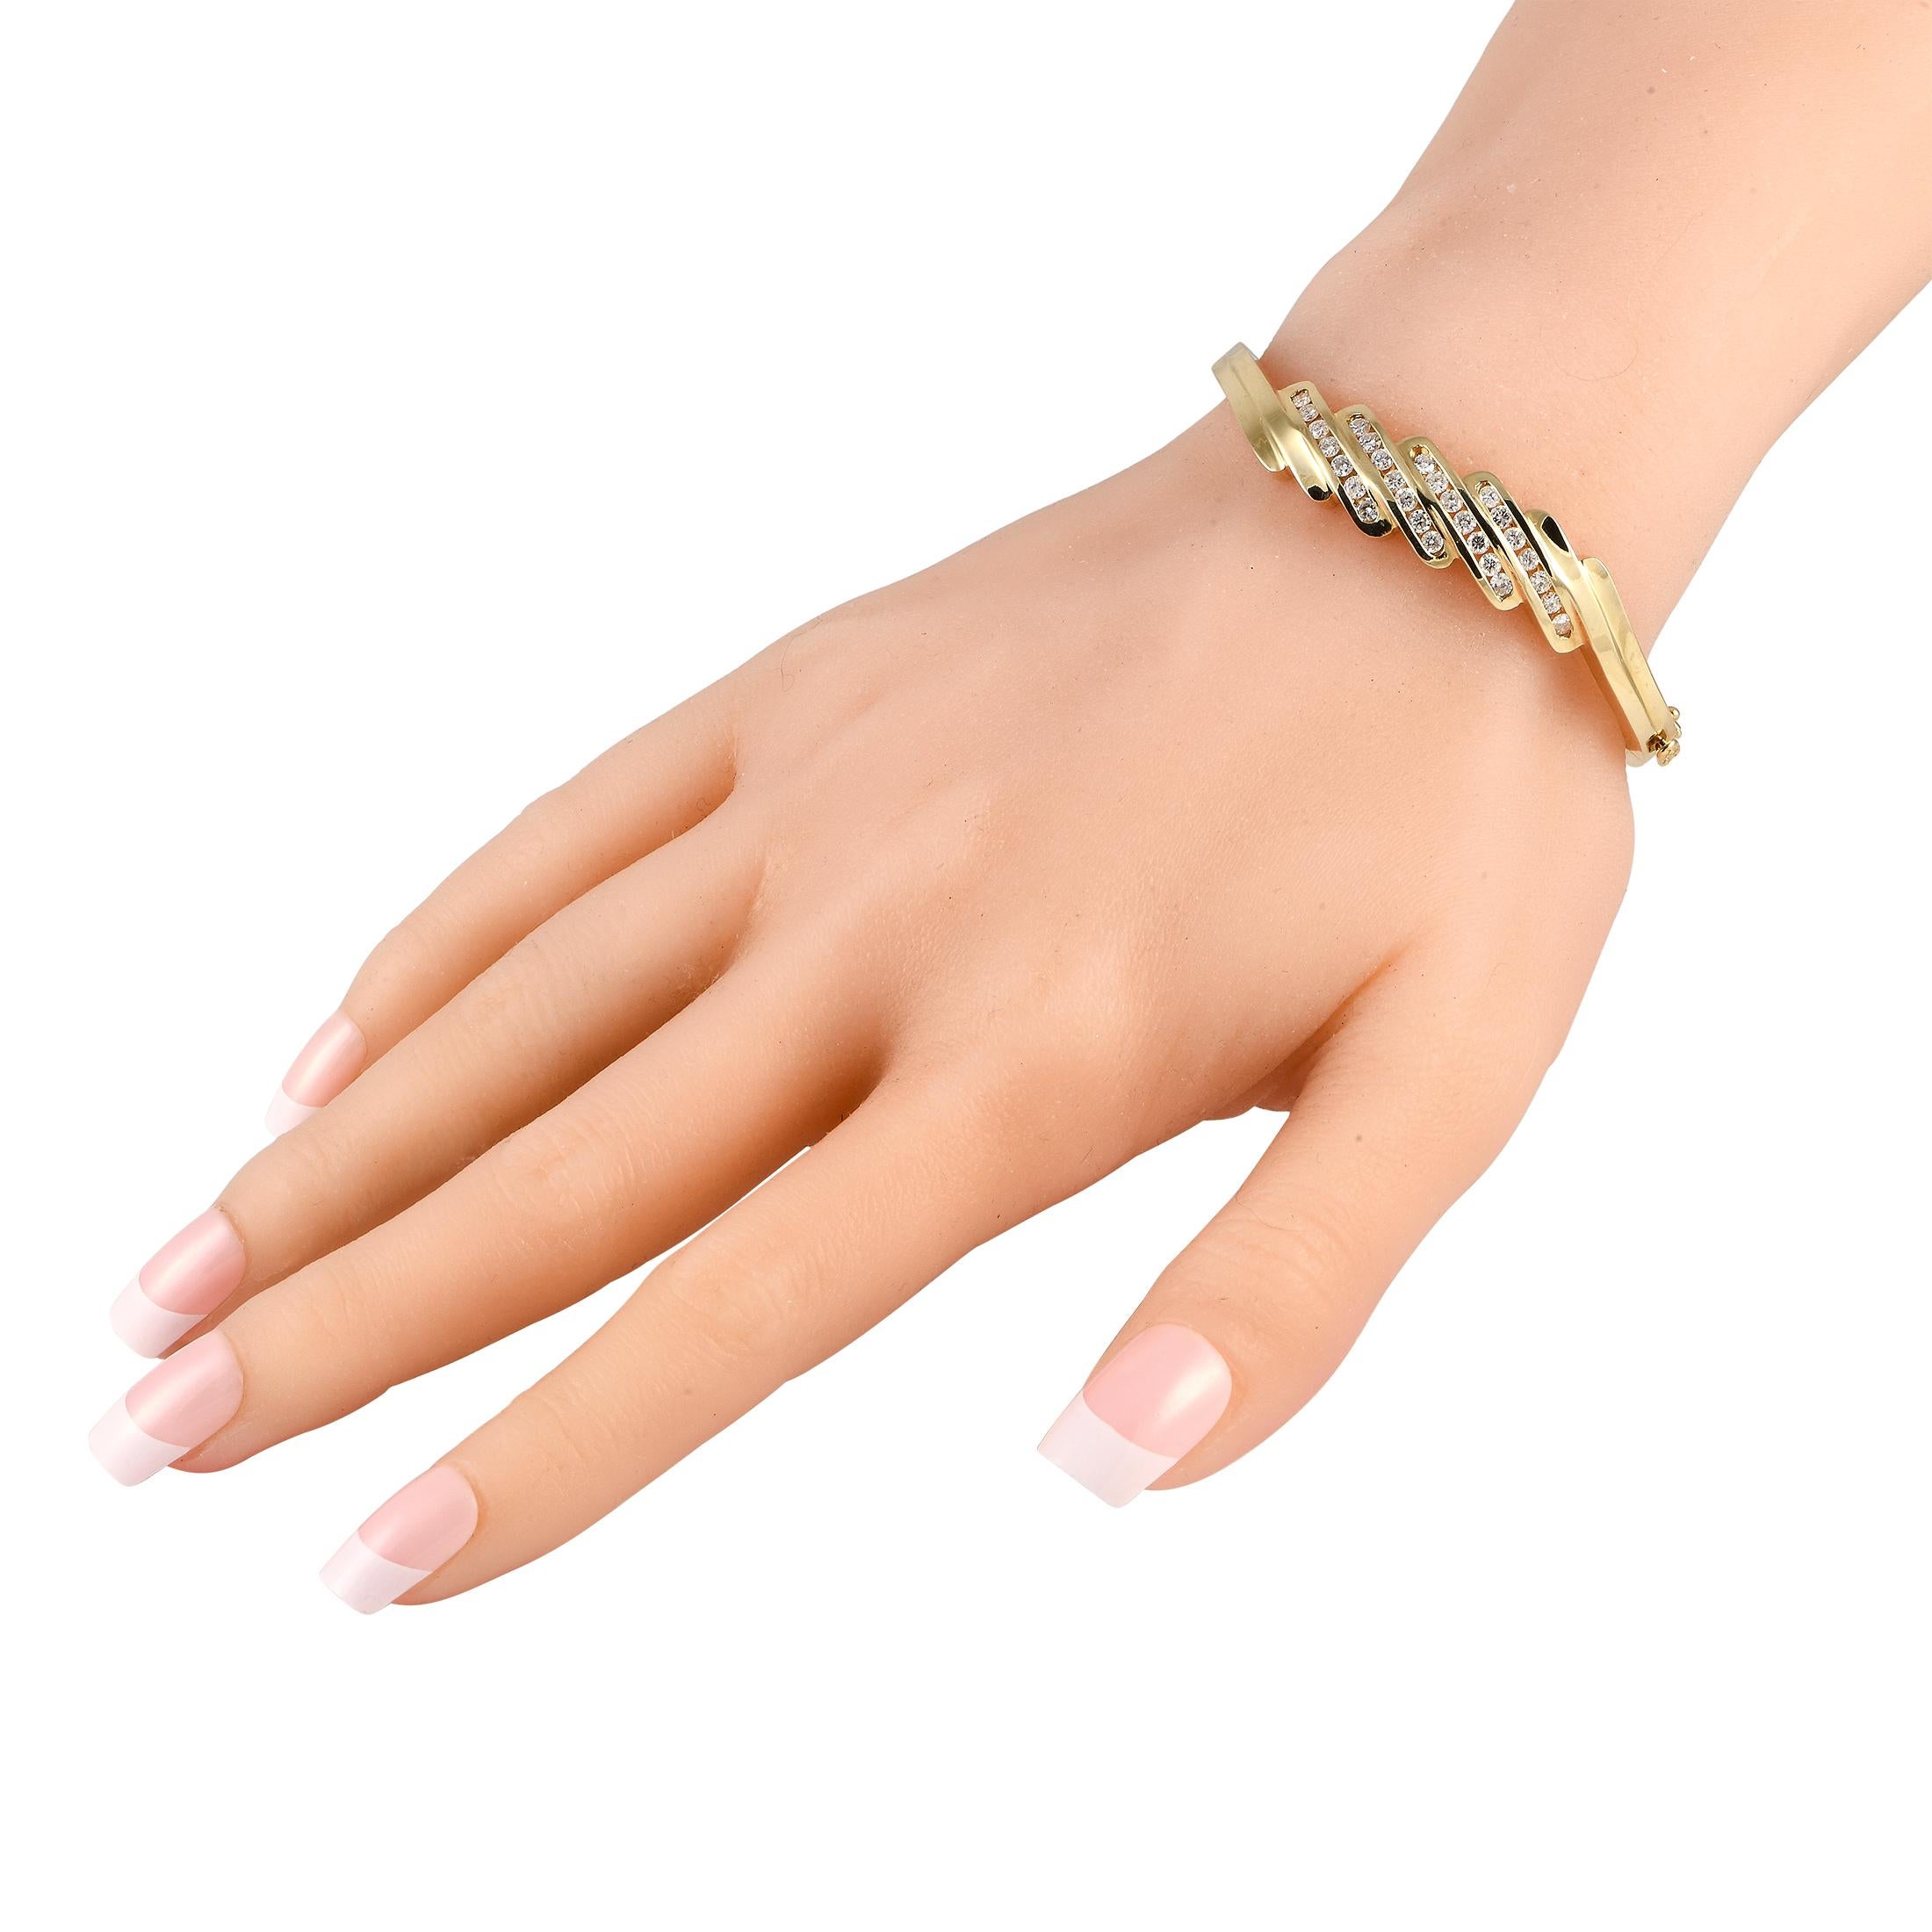 Solide, étincelant et saisissant, ce bracelet en or jaune avec quatre rangées de diamants peut rehausser n'importe quel look en un instant. Ce bracelet rigide et articulé pour le poignet est en or jaune 14 carats et est fixé par un fermoir à boucle.